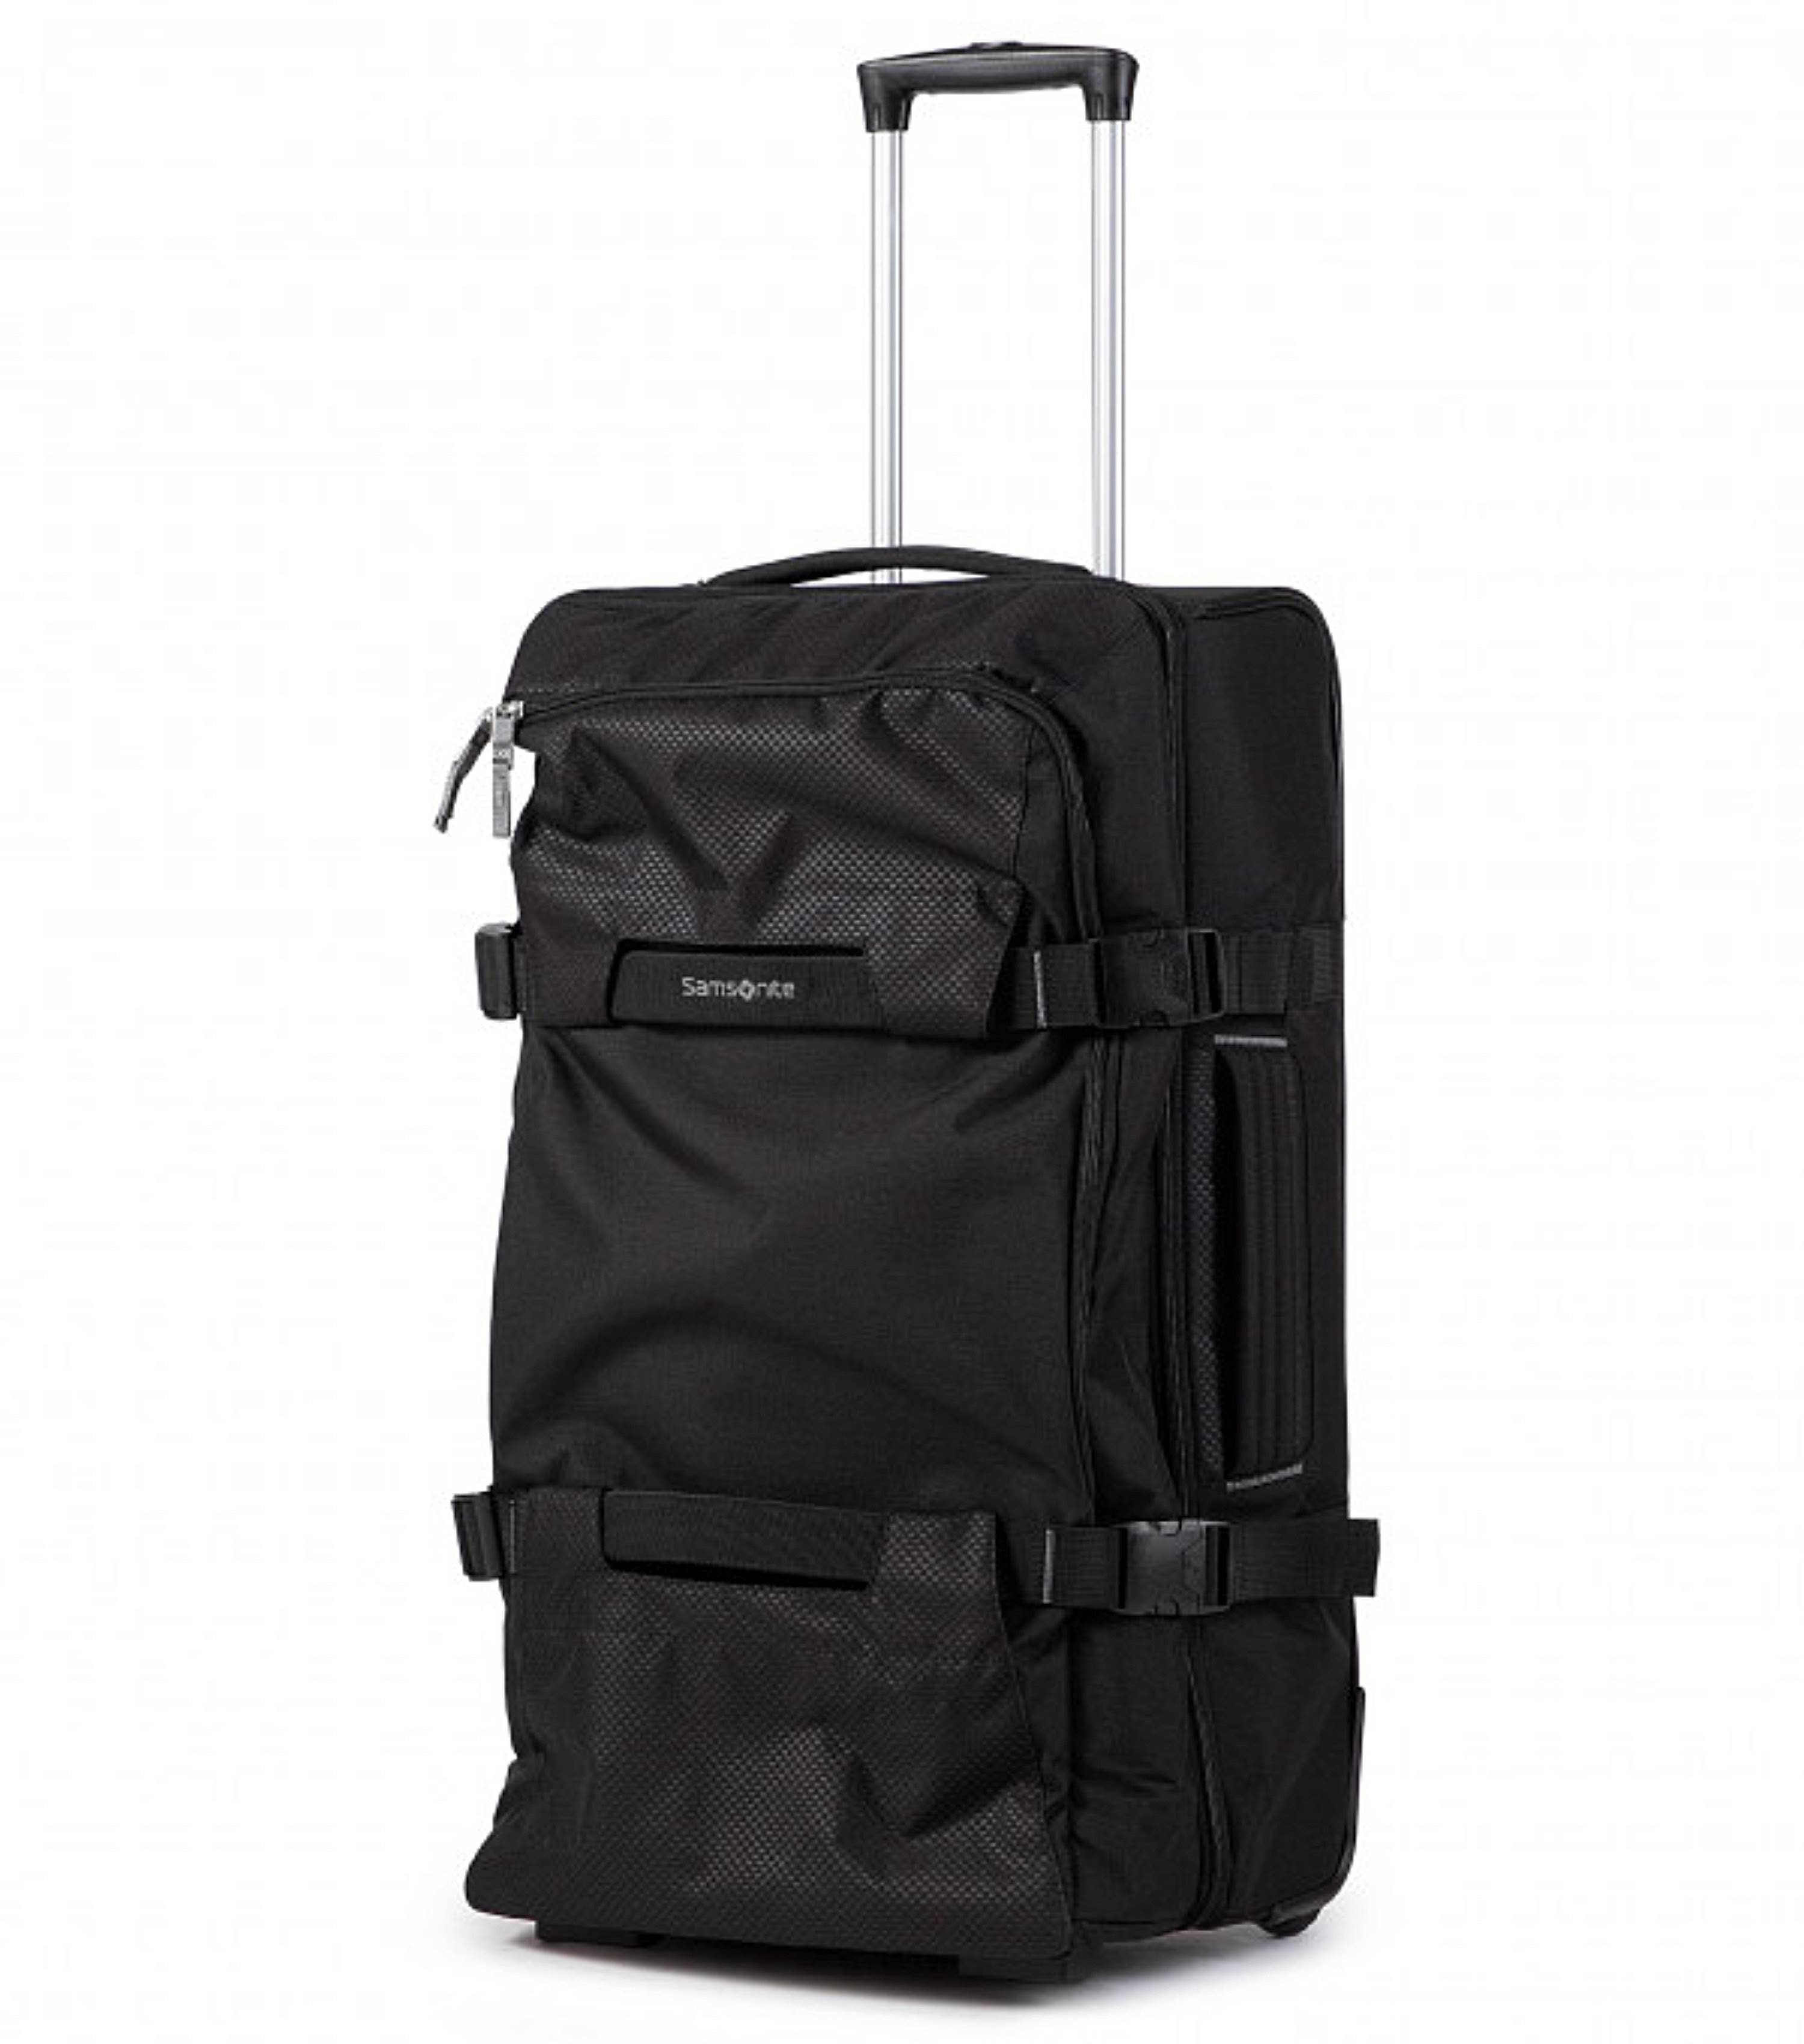 Samsonite 100049 - Morgan Travel Bag $49.49 - Bags